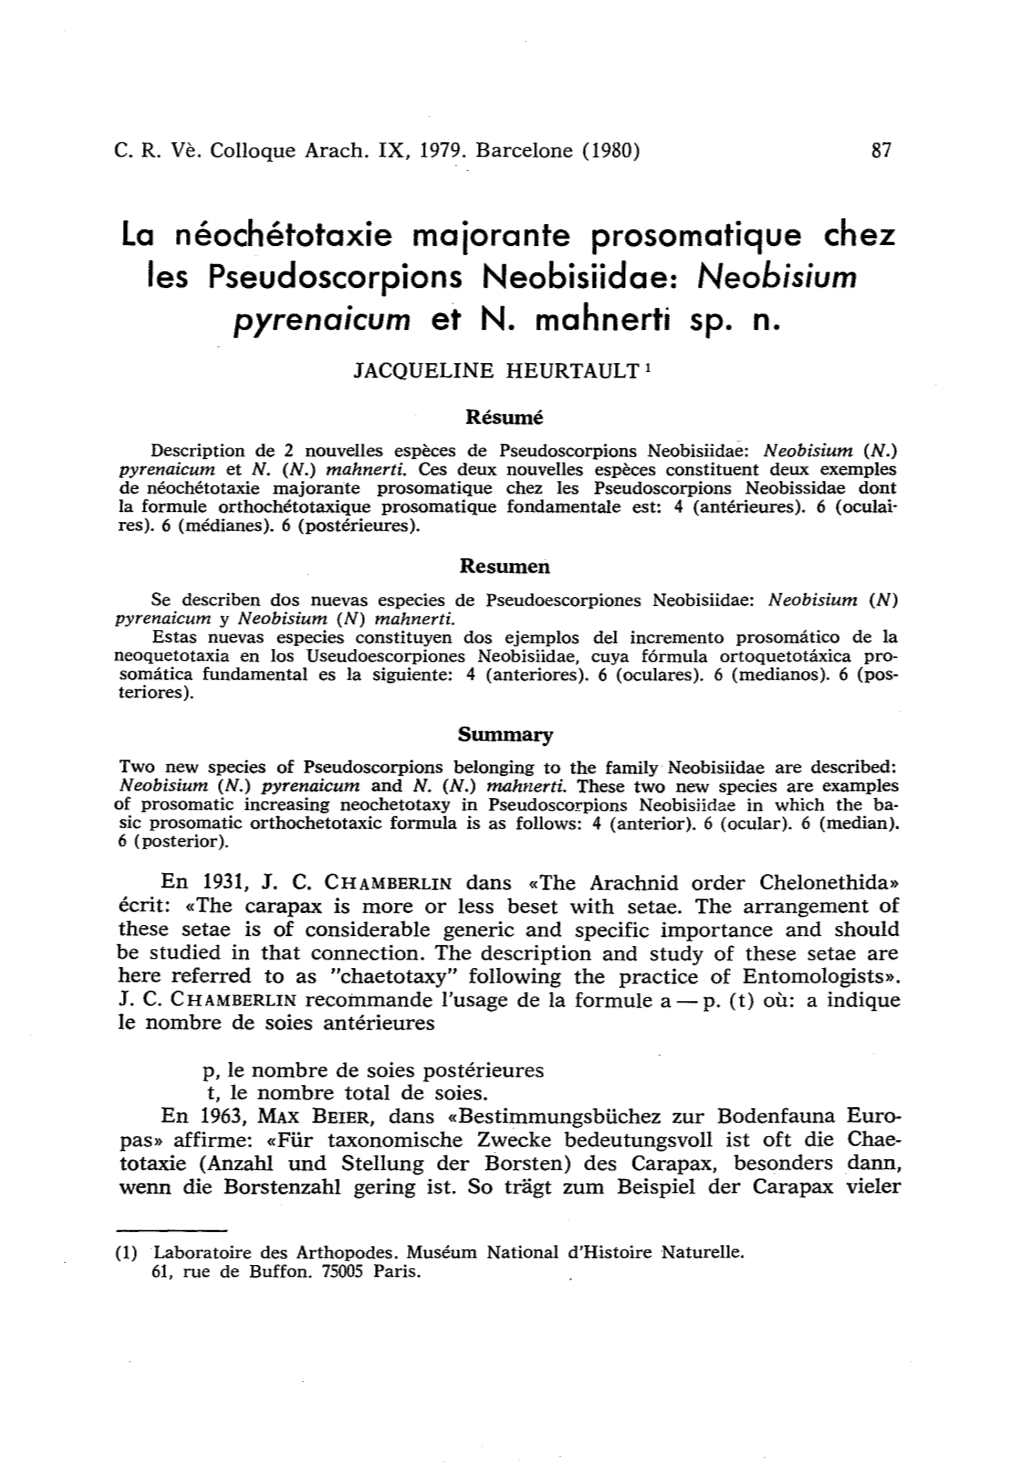 Neobisium Pyreno/Cum Et N. Mahnerti Sp. N